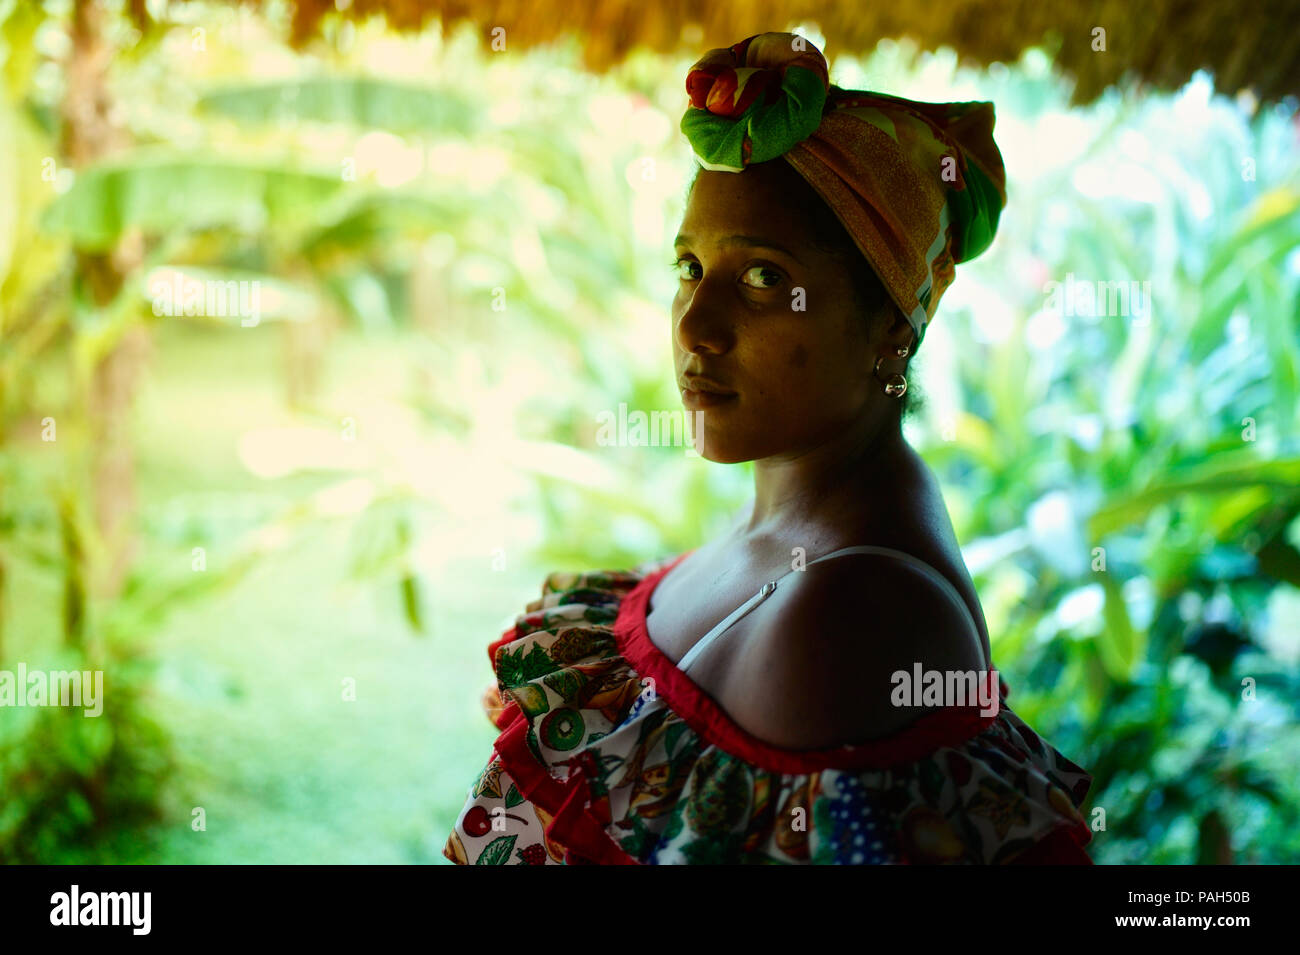 Perfil de una mujer afrocolombiana en traje tradicional Foto de stock